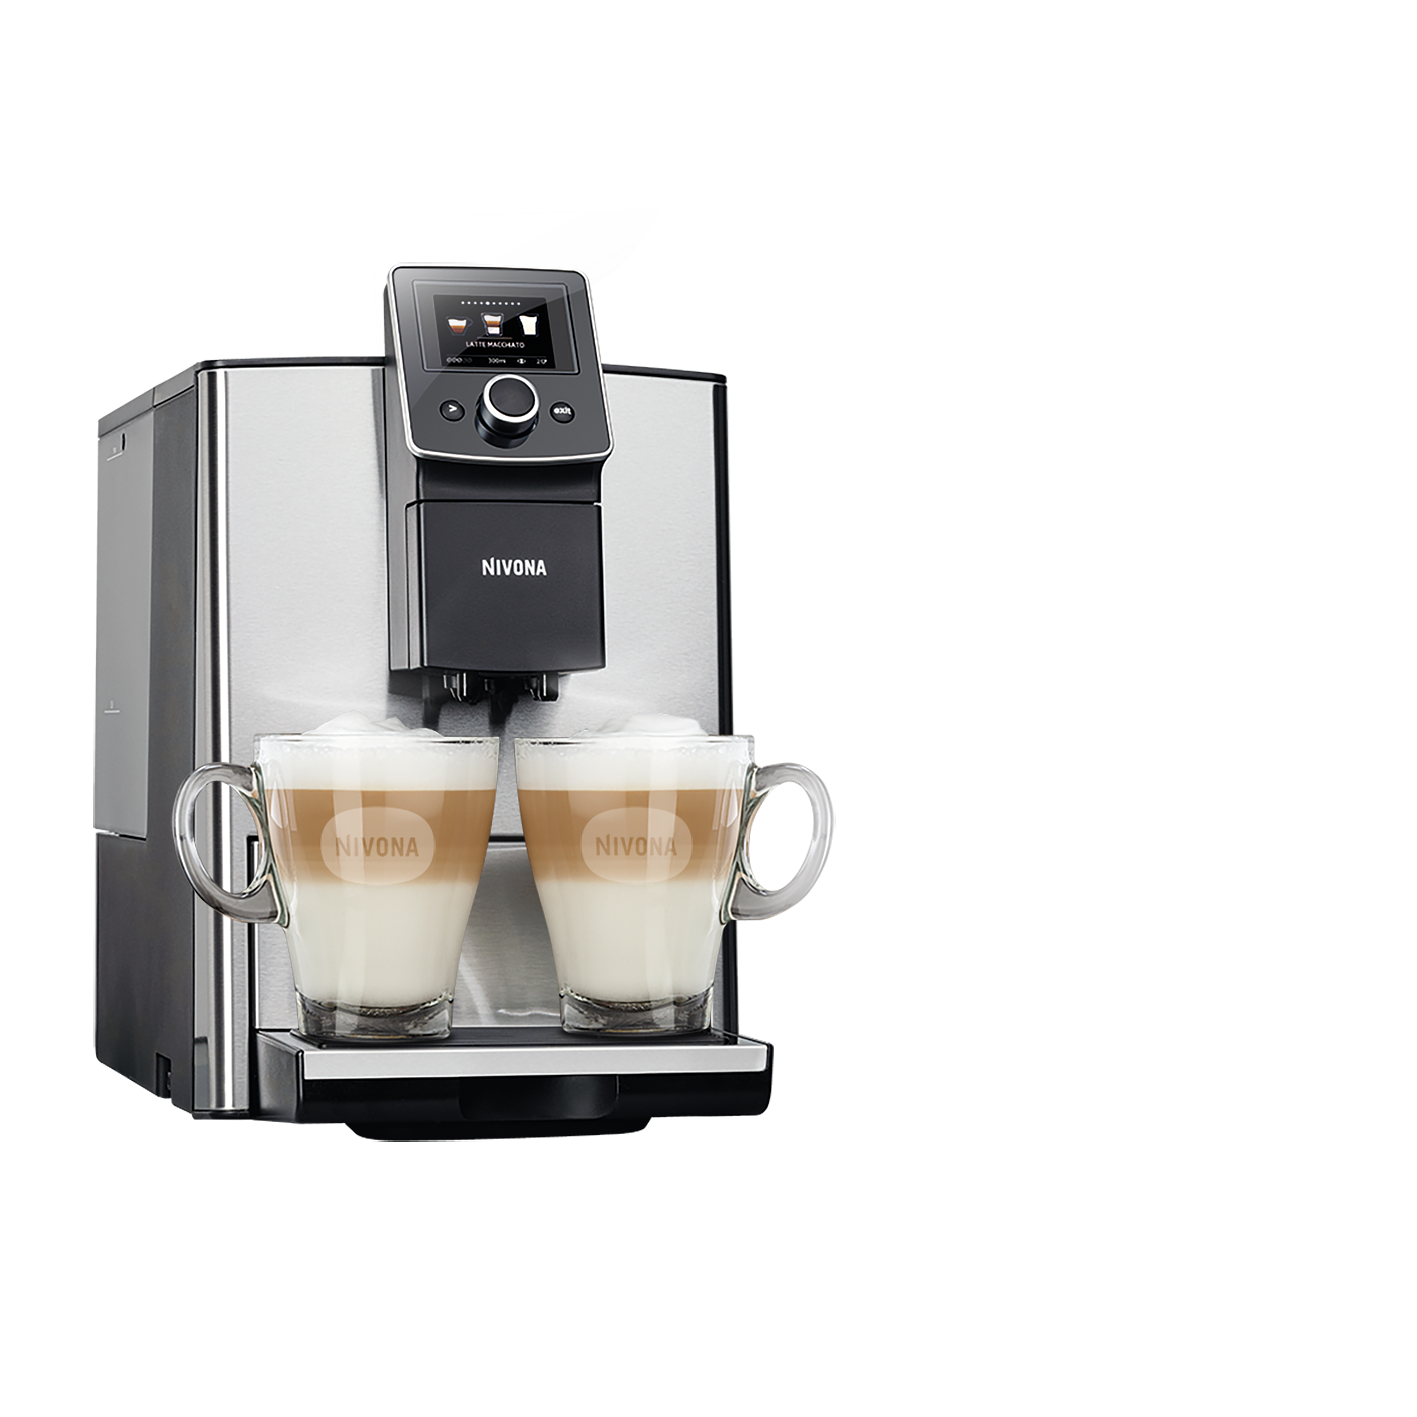 NIVONA espressomachine NICR825